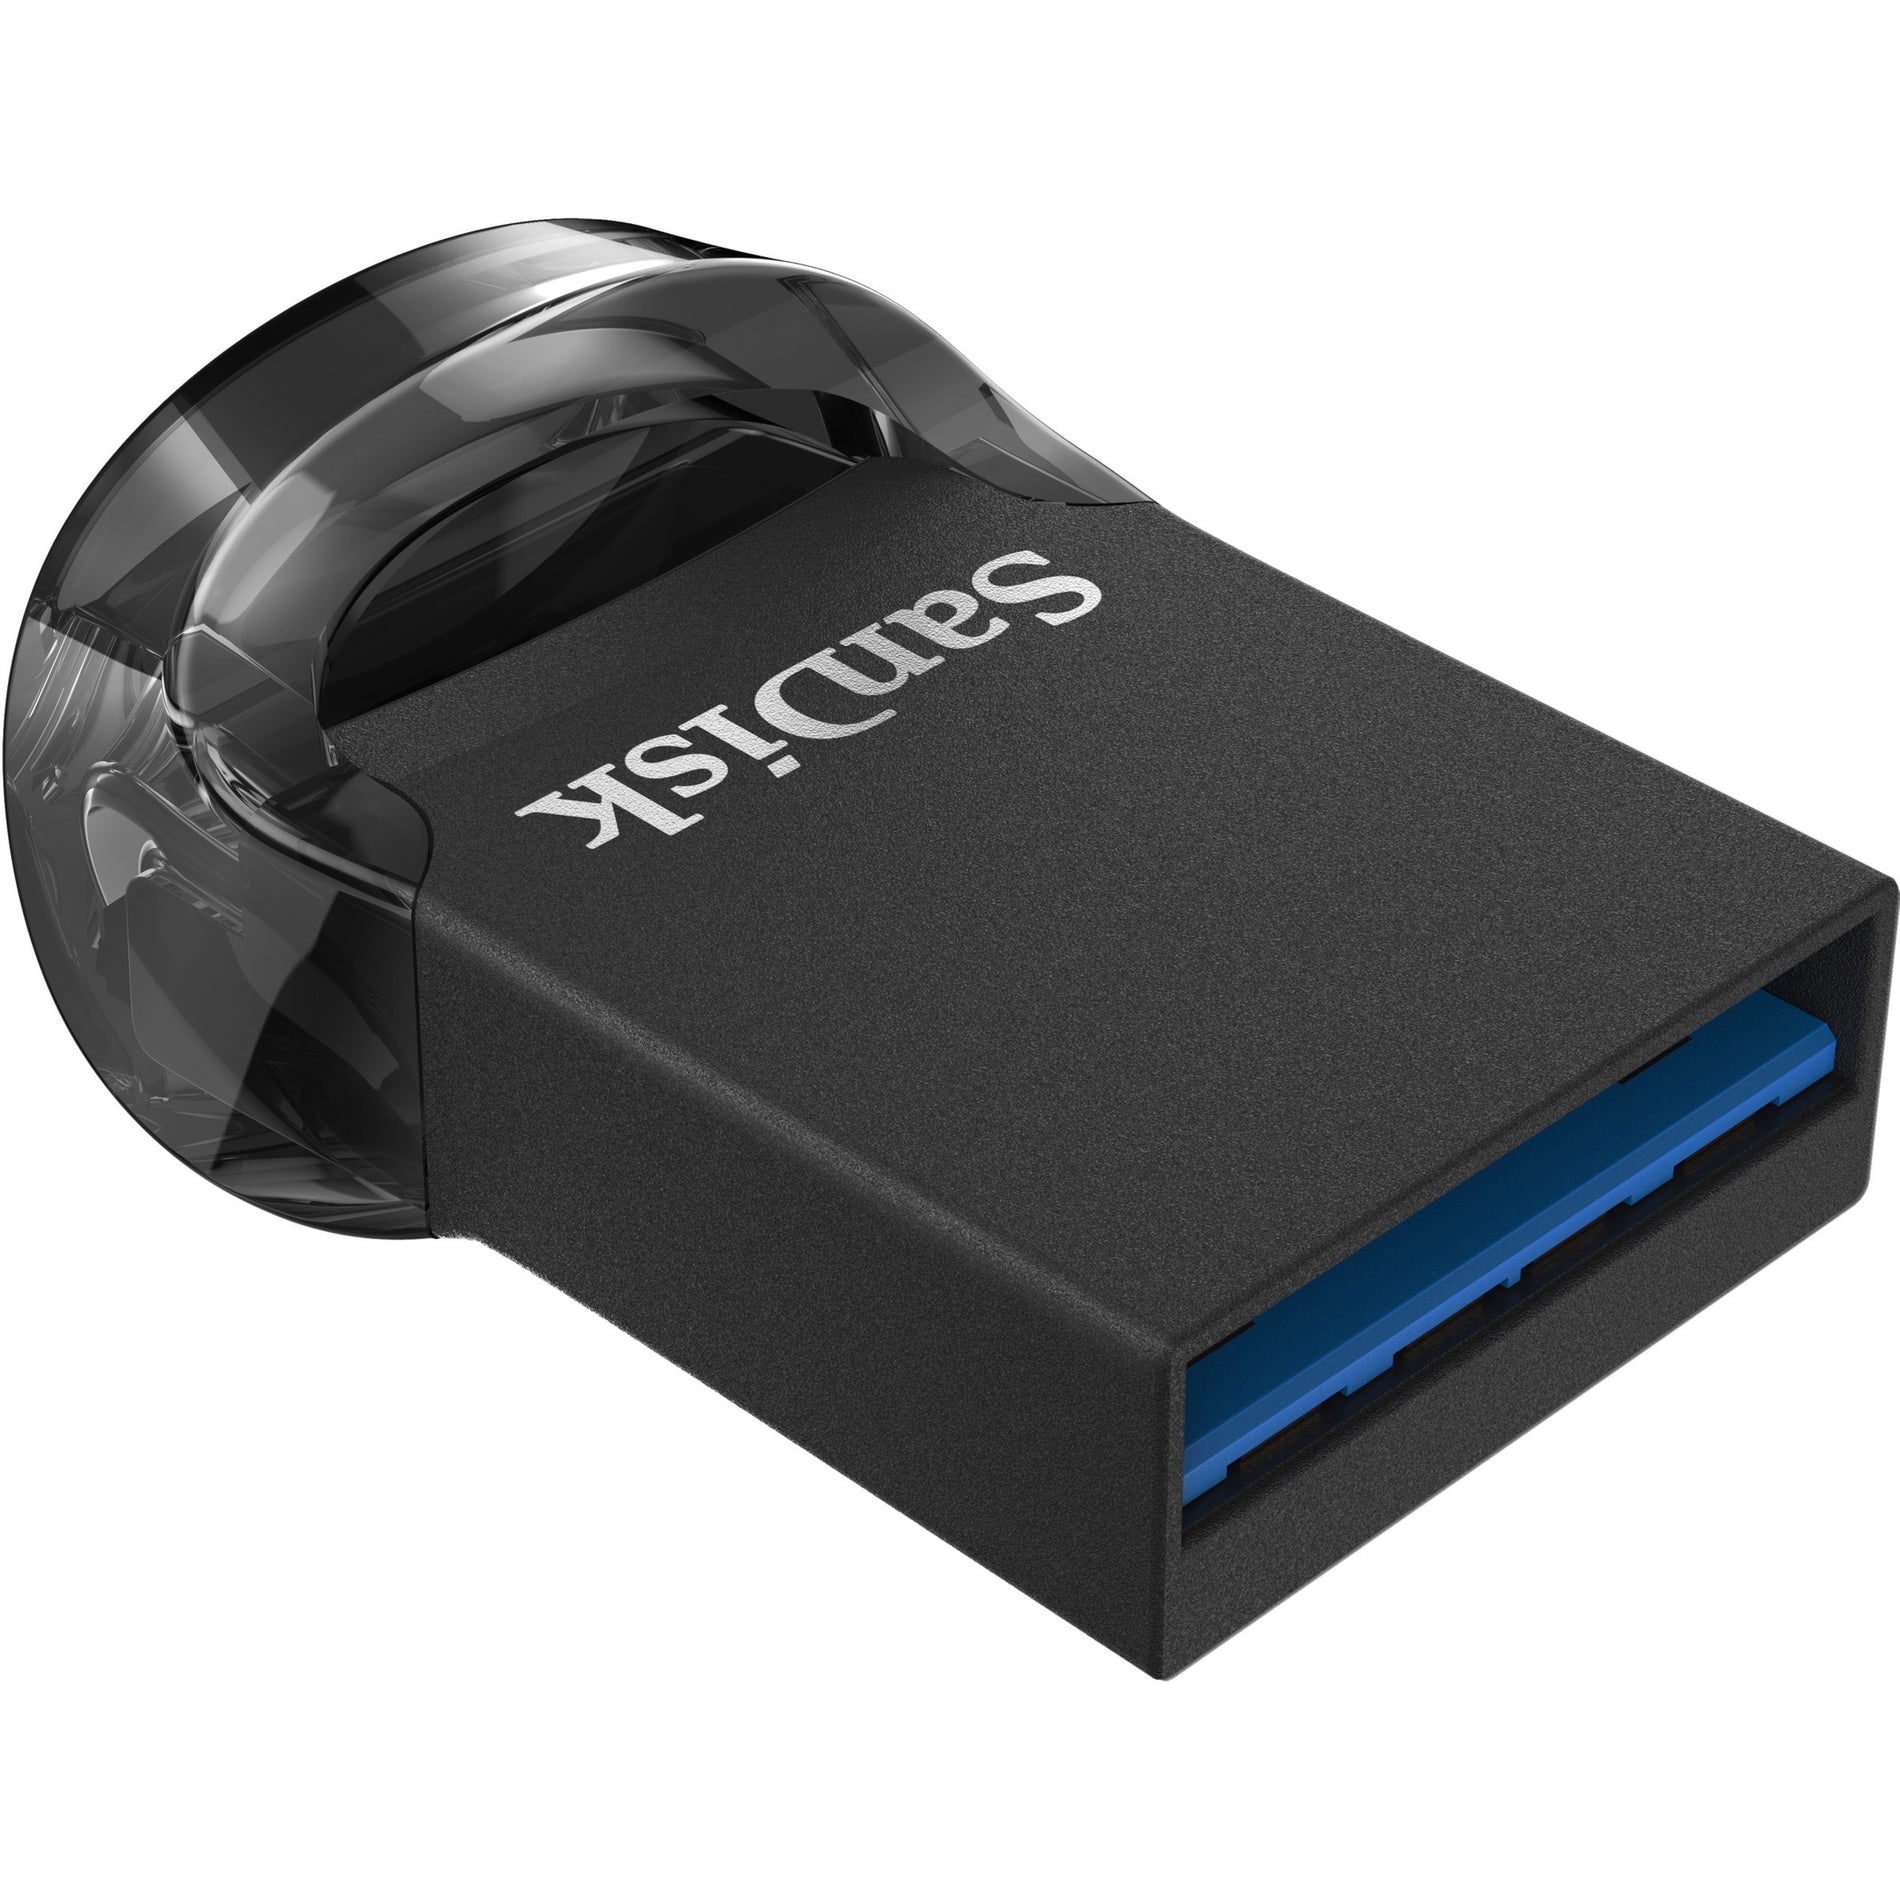 SanDisk SDCZ430-032G-A46 Ultra Fit USB 3.1 Flash Drive 32GB Transfert de Données à Haute Vitesse et Design Compact